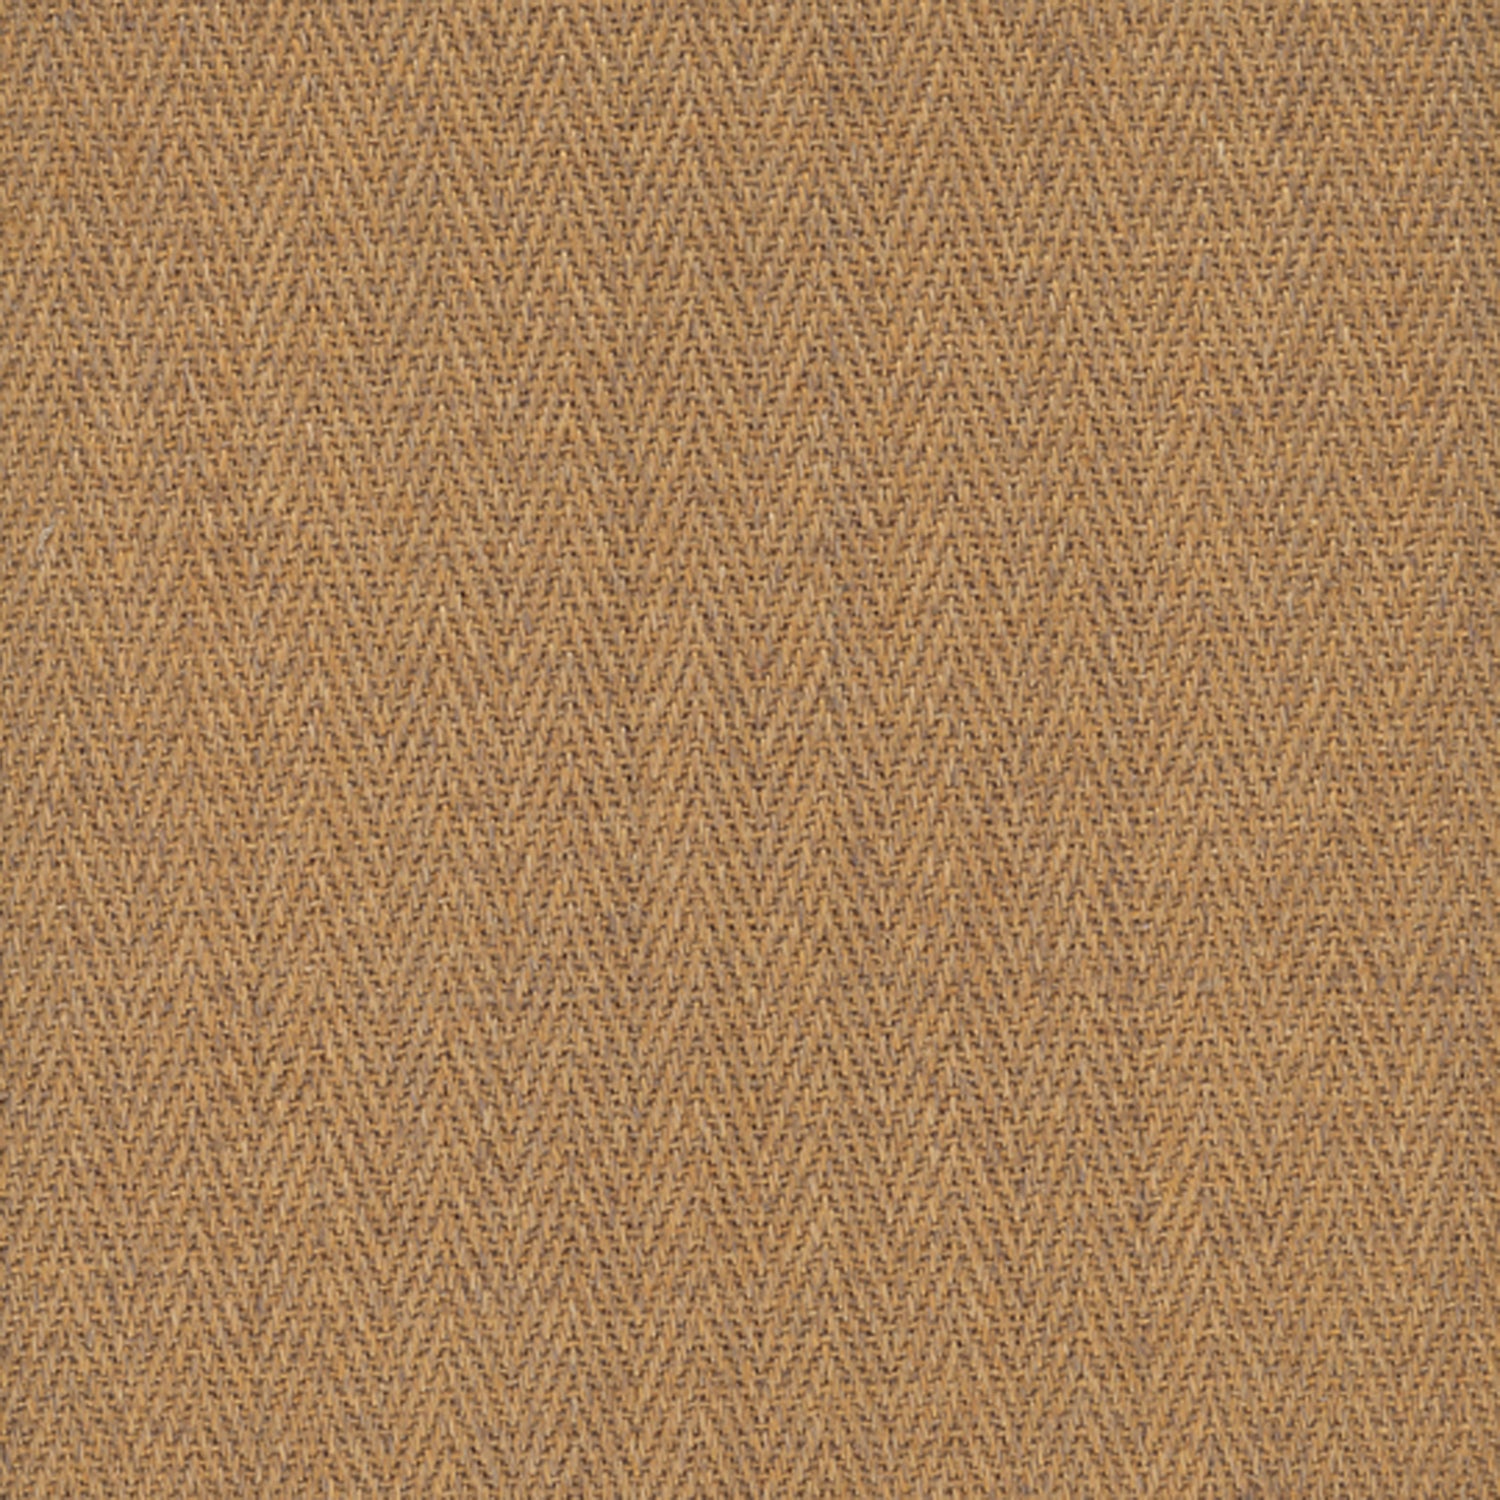 Sisal broadloom carpet swatch in a herringbone flat weave in brown.